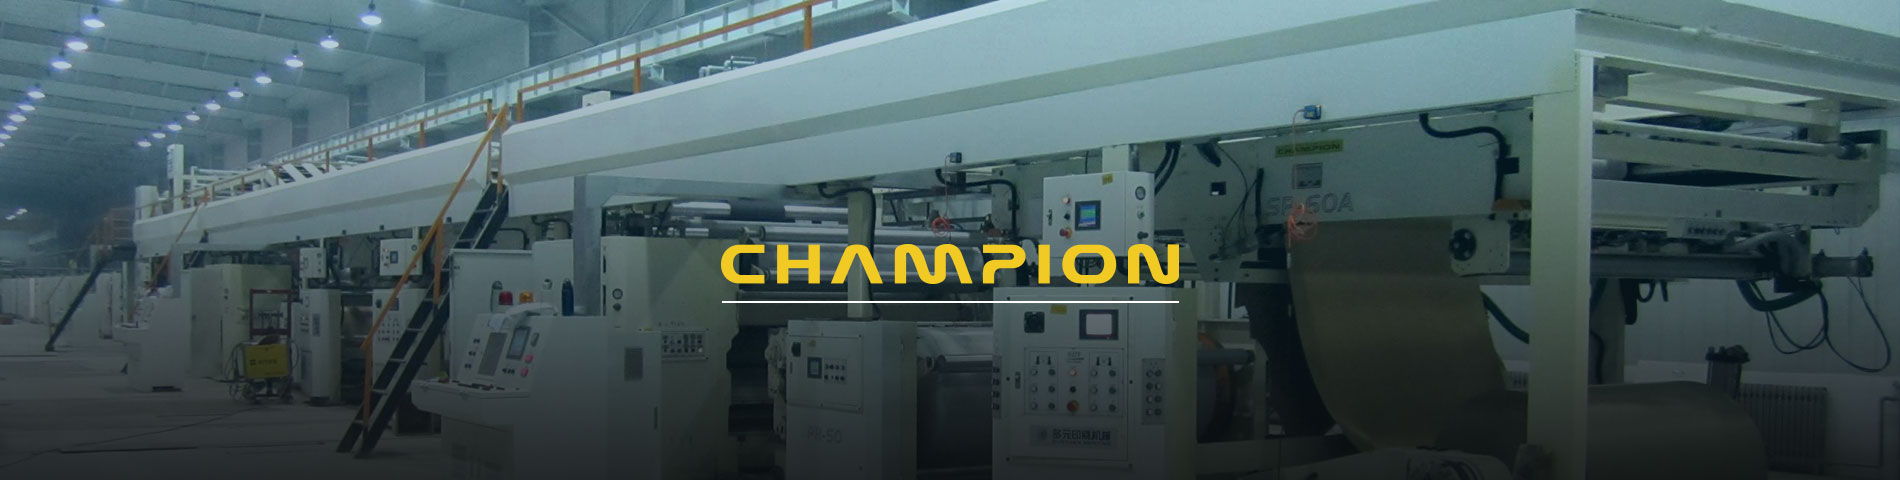 Campeão Ondulado é um papelão ondulado profissional Fabricante de equipamentos